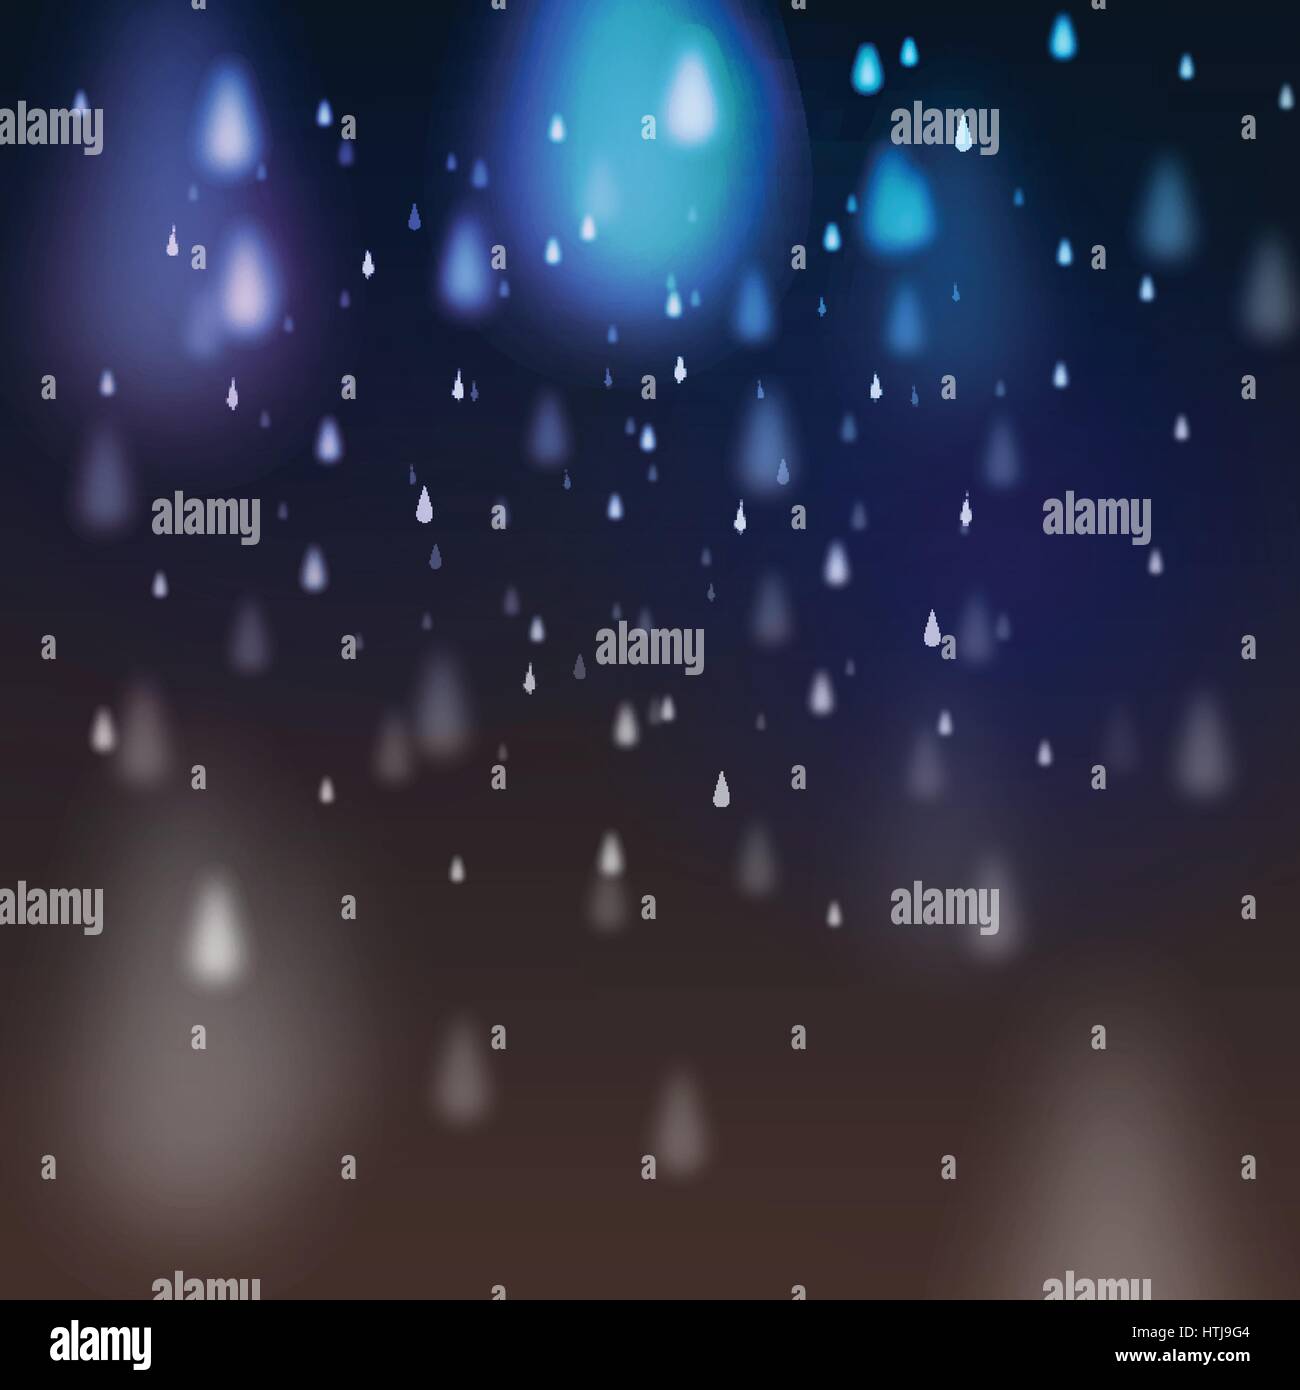 Abstract Rain on Dark Background - Vector Illustration Stock Vector